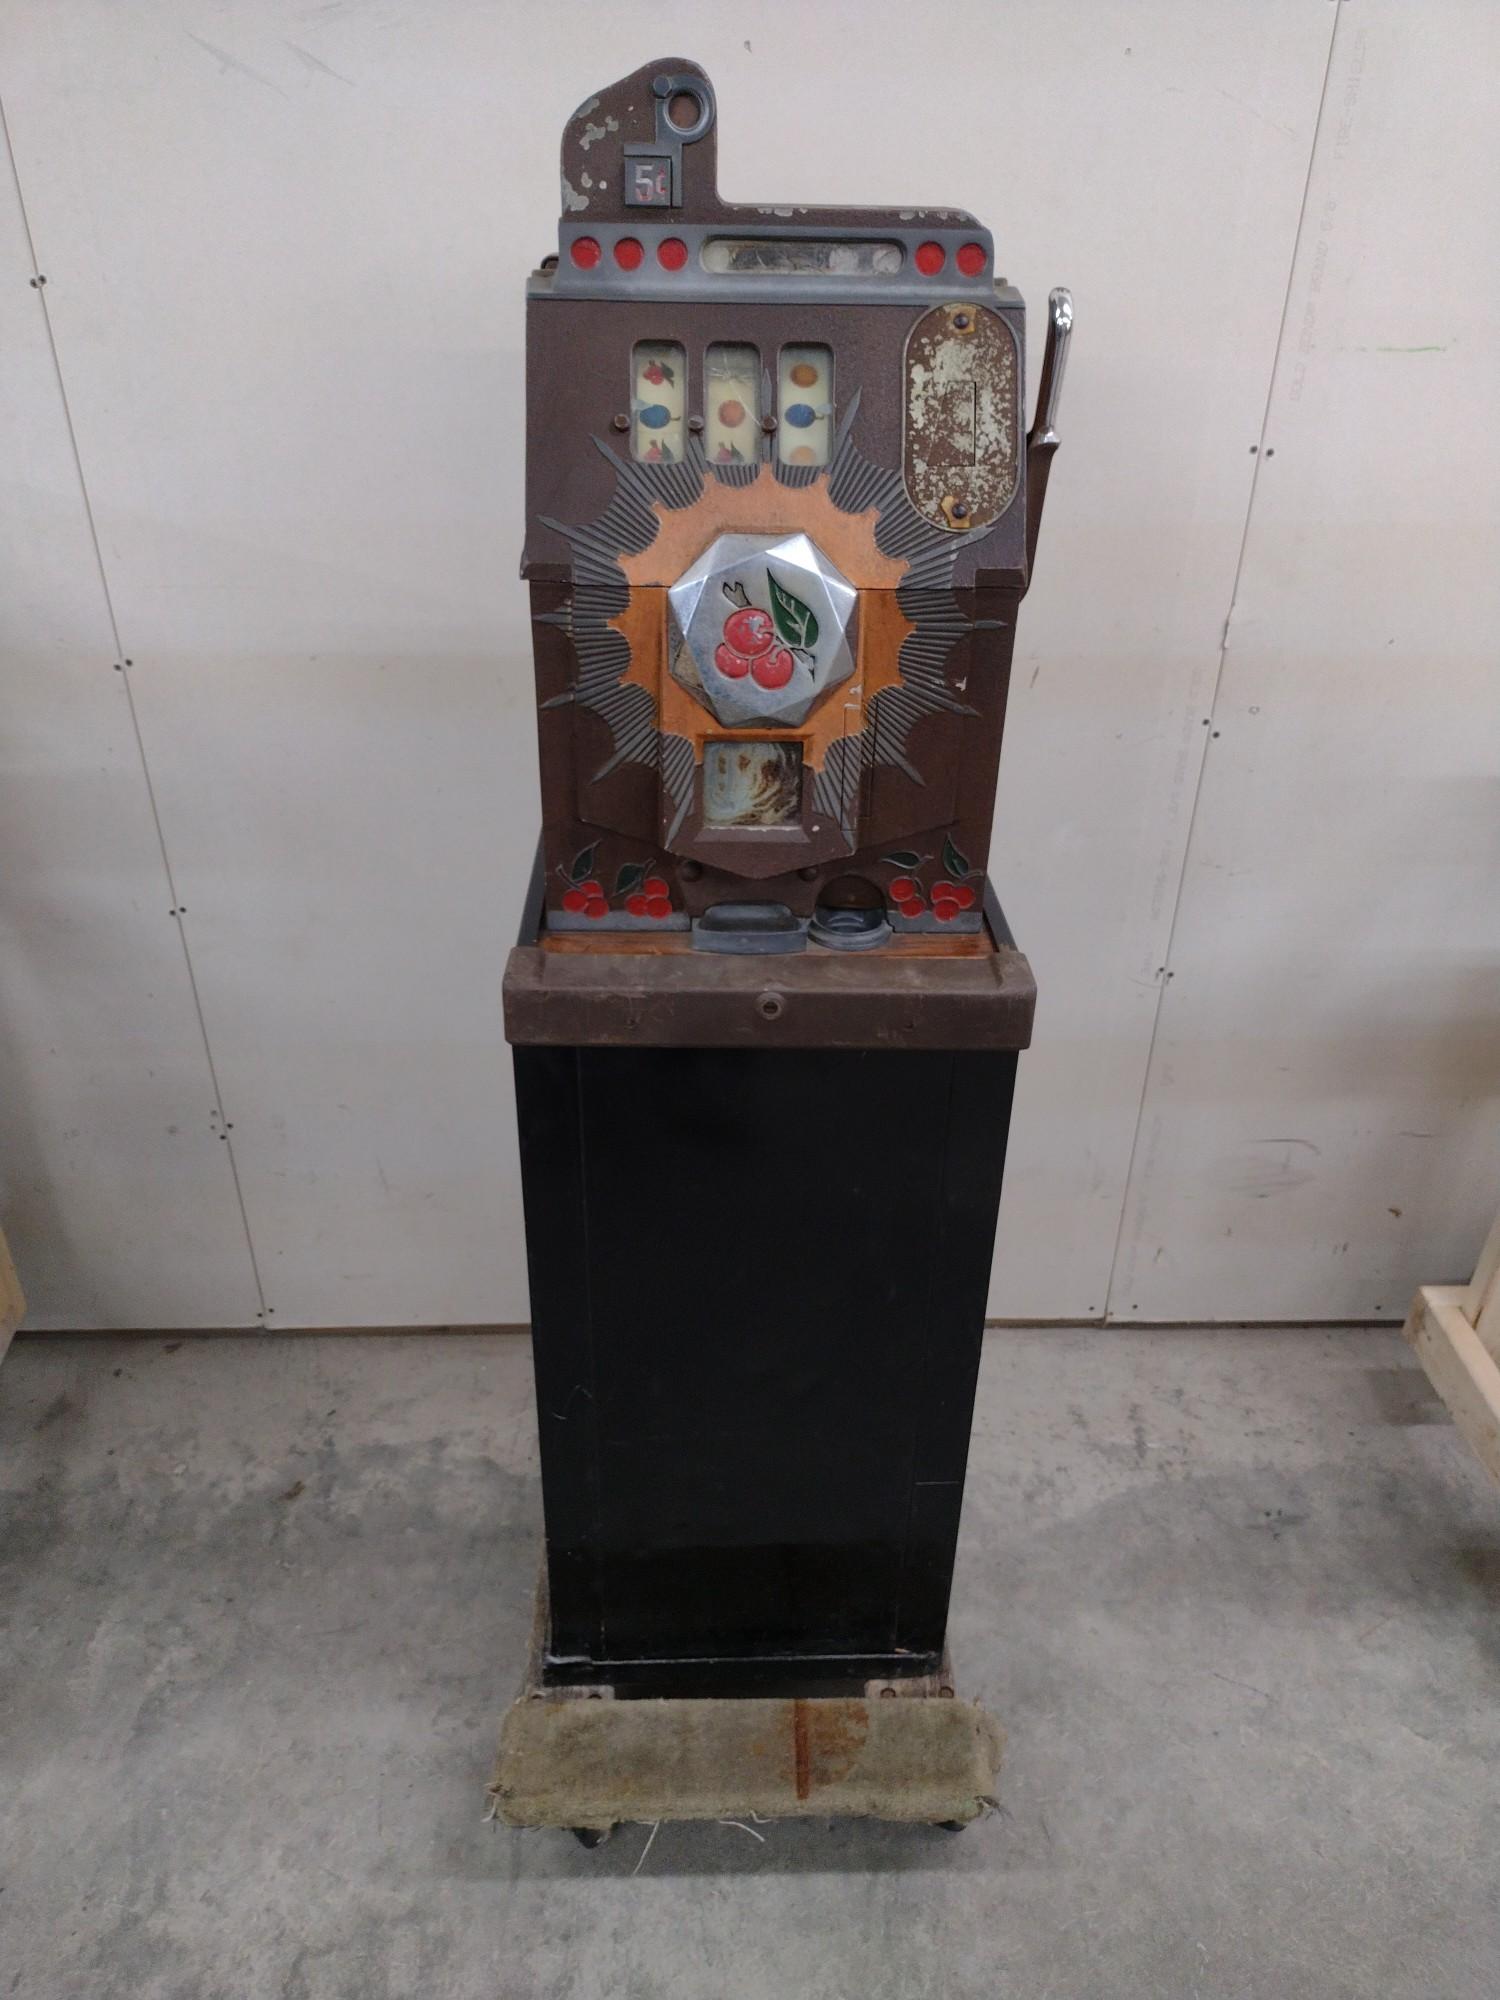 5 Cent Mills Bursting Cherry Slot Machine with Stand